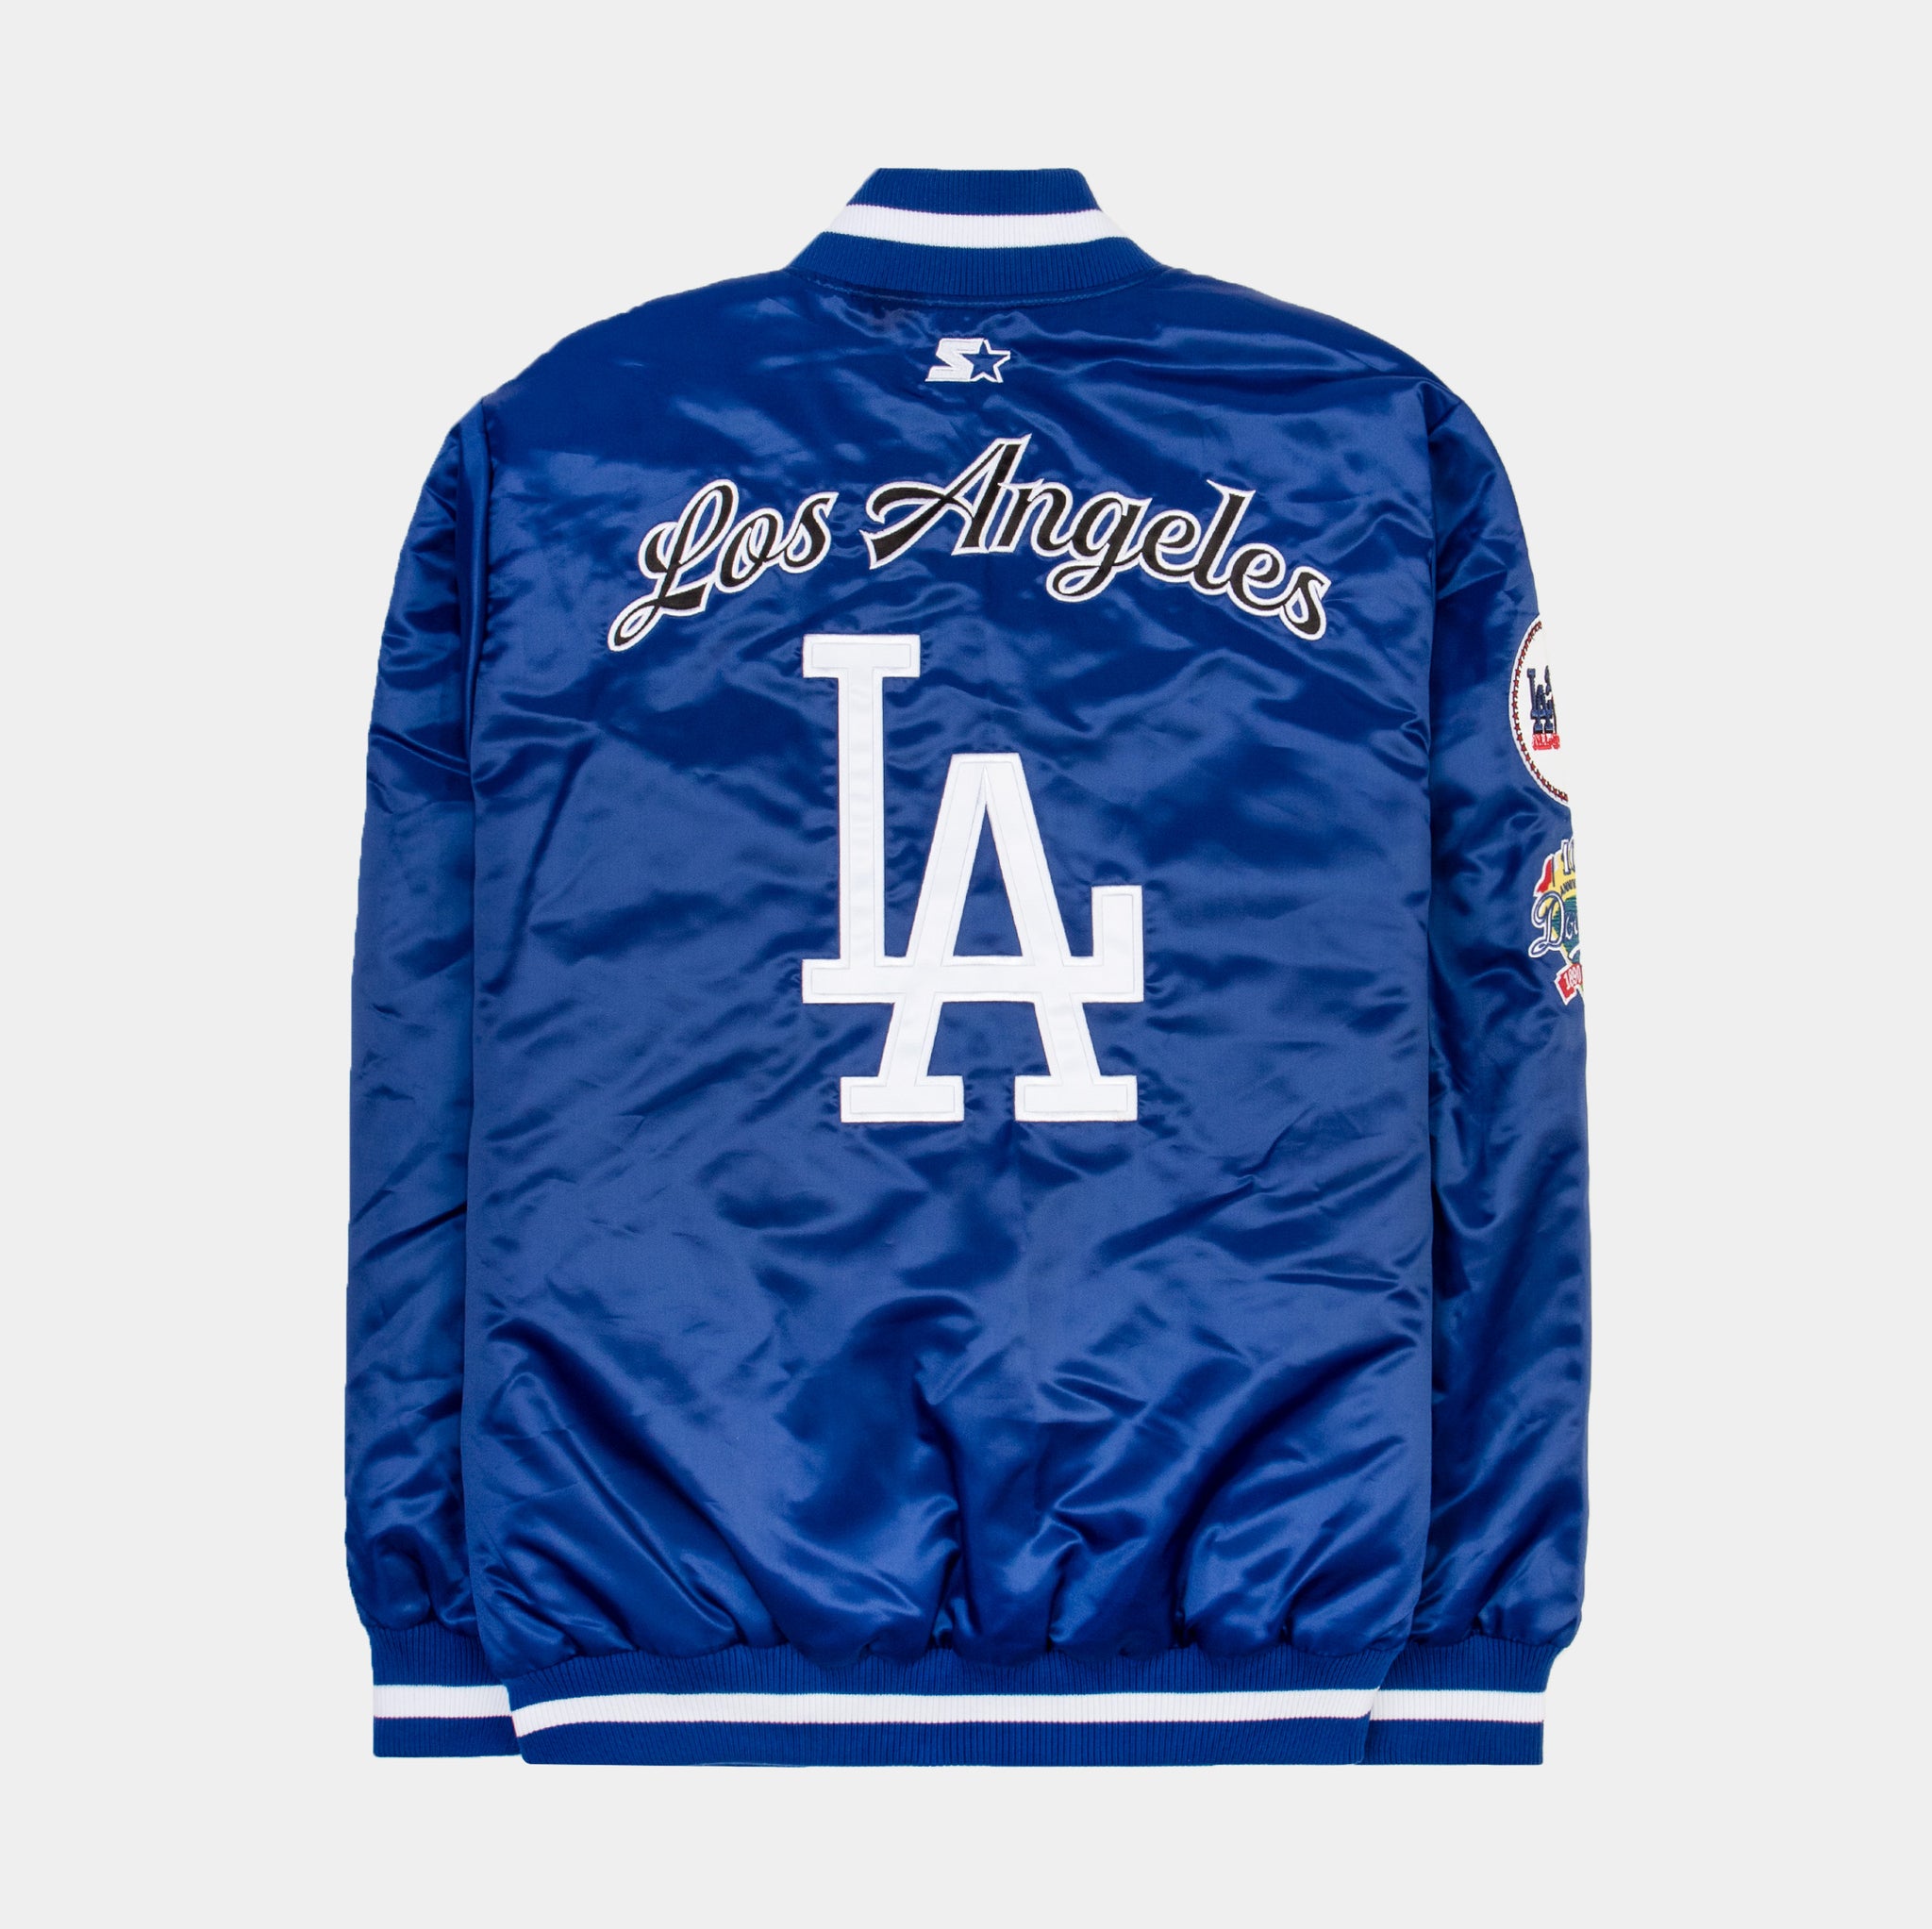 Nike SB Baseball Varsity Jacket (Dodgers Blue)